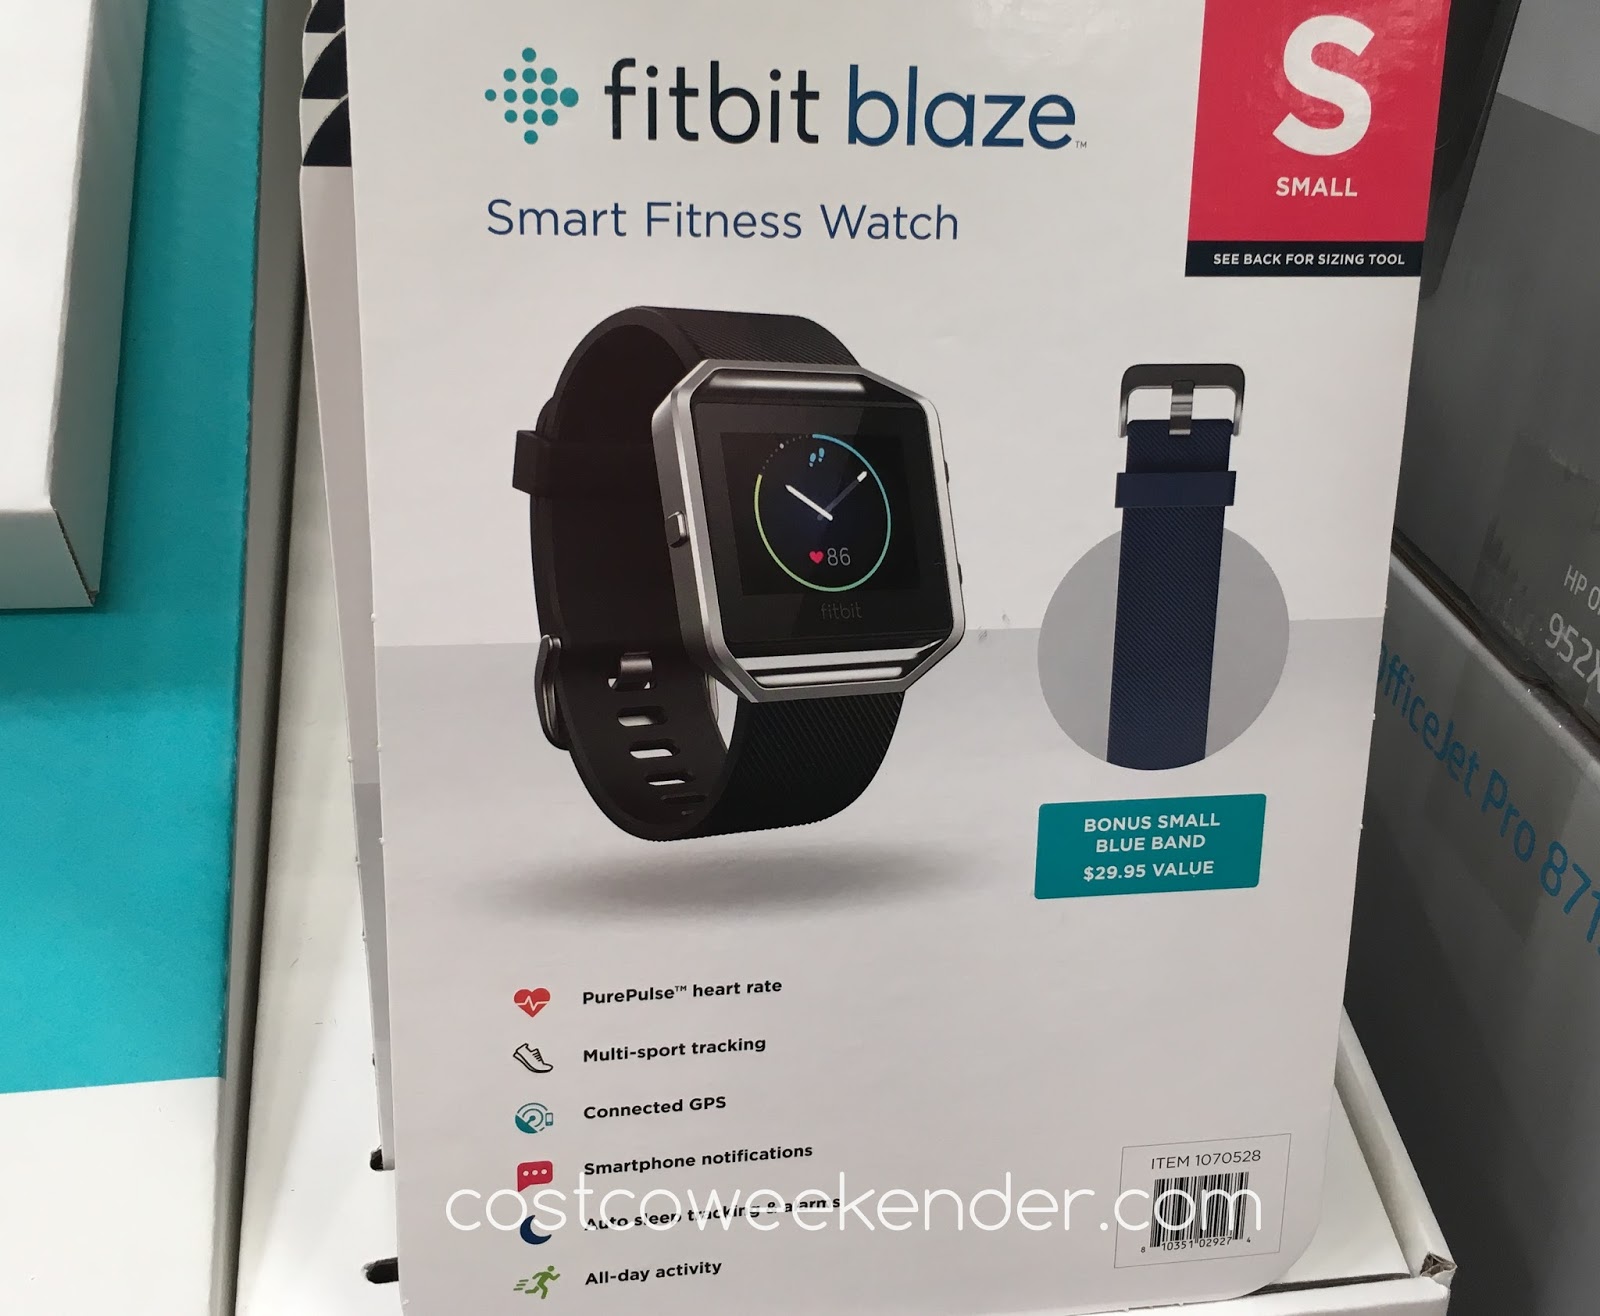 Fitbit Blaze Smart Fitness Activity Watch | Costco Weekender